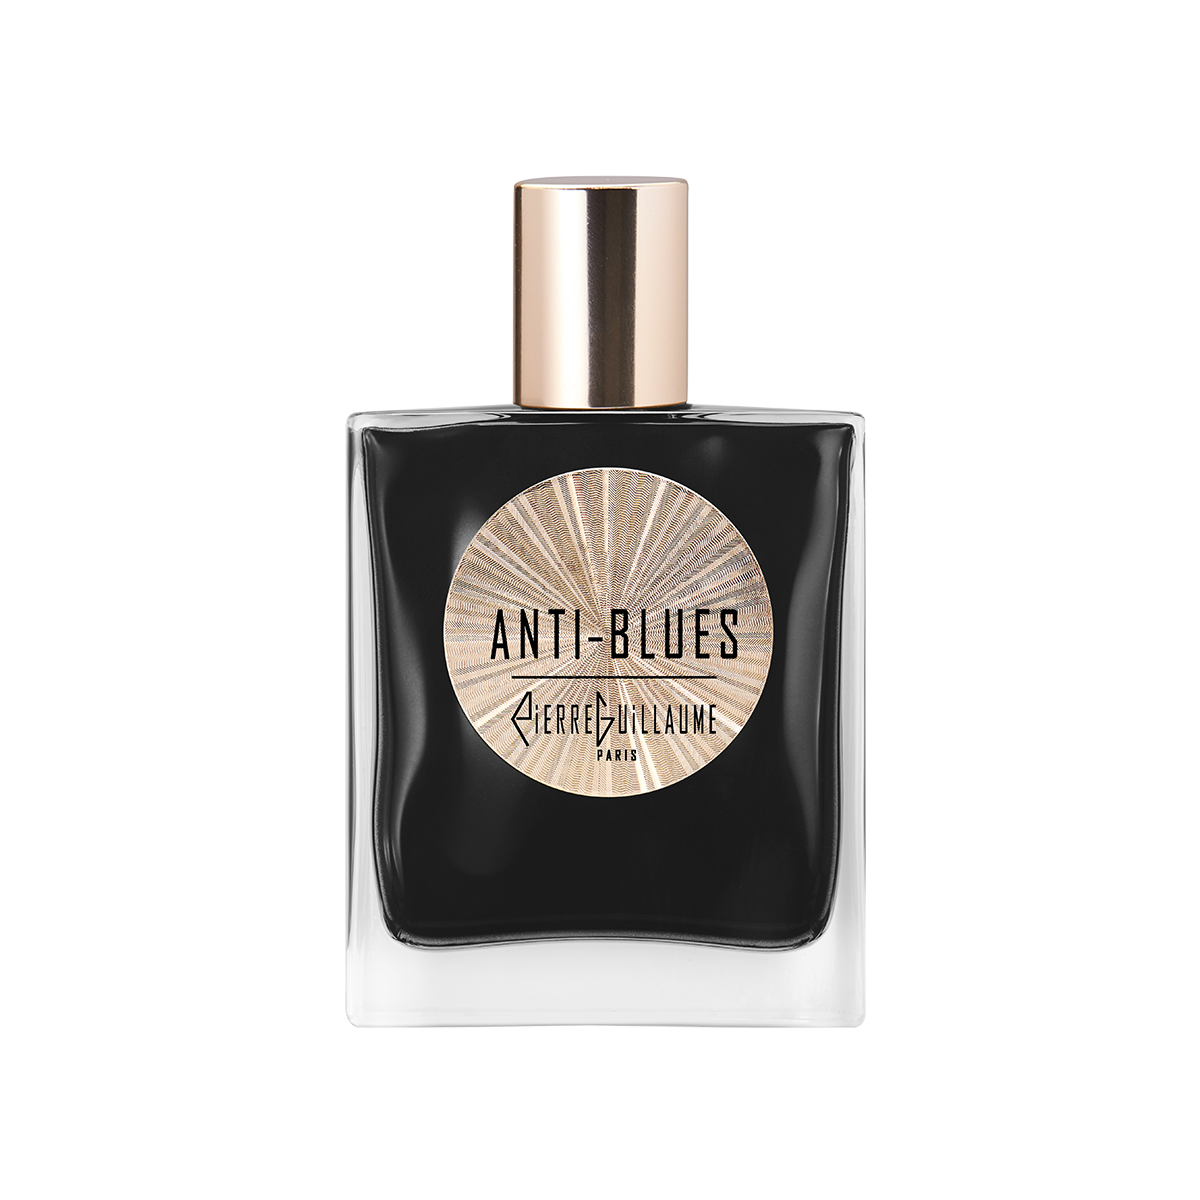 ANTI-BLUES Eau de Parfum 50ml